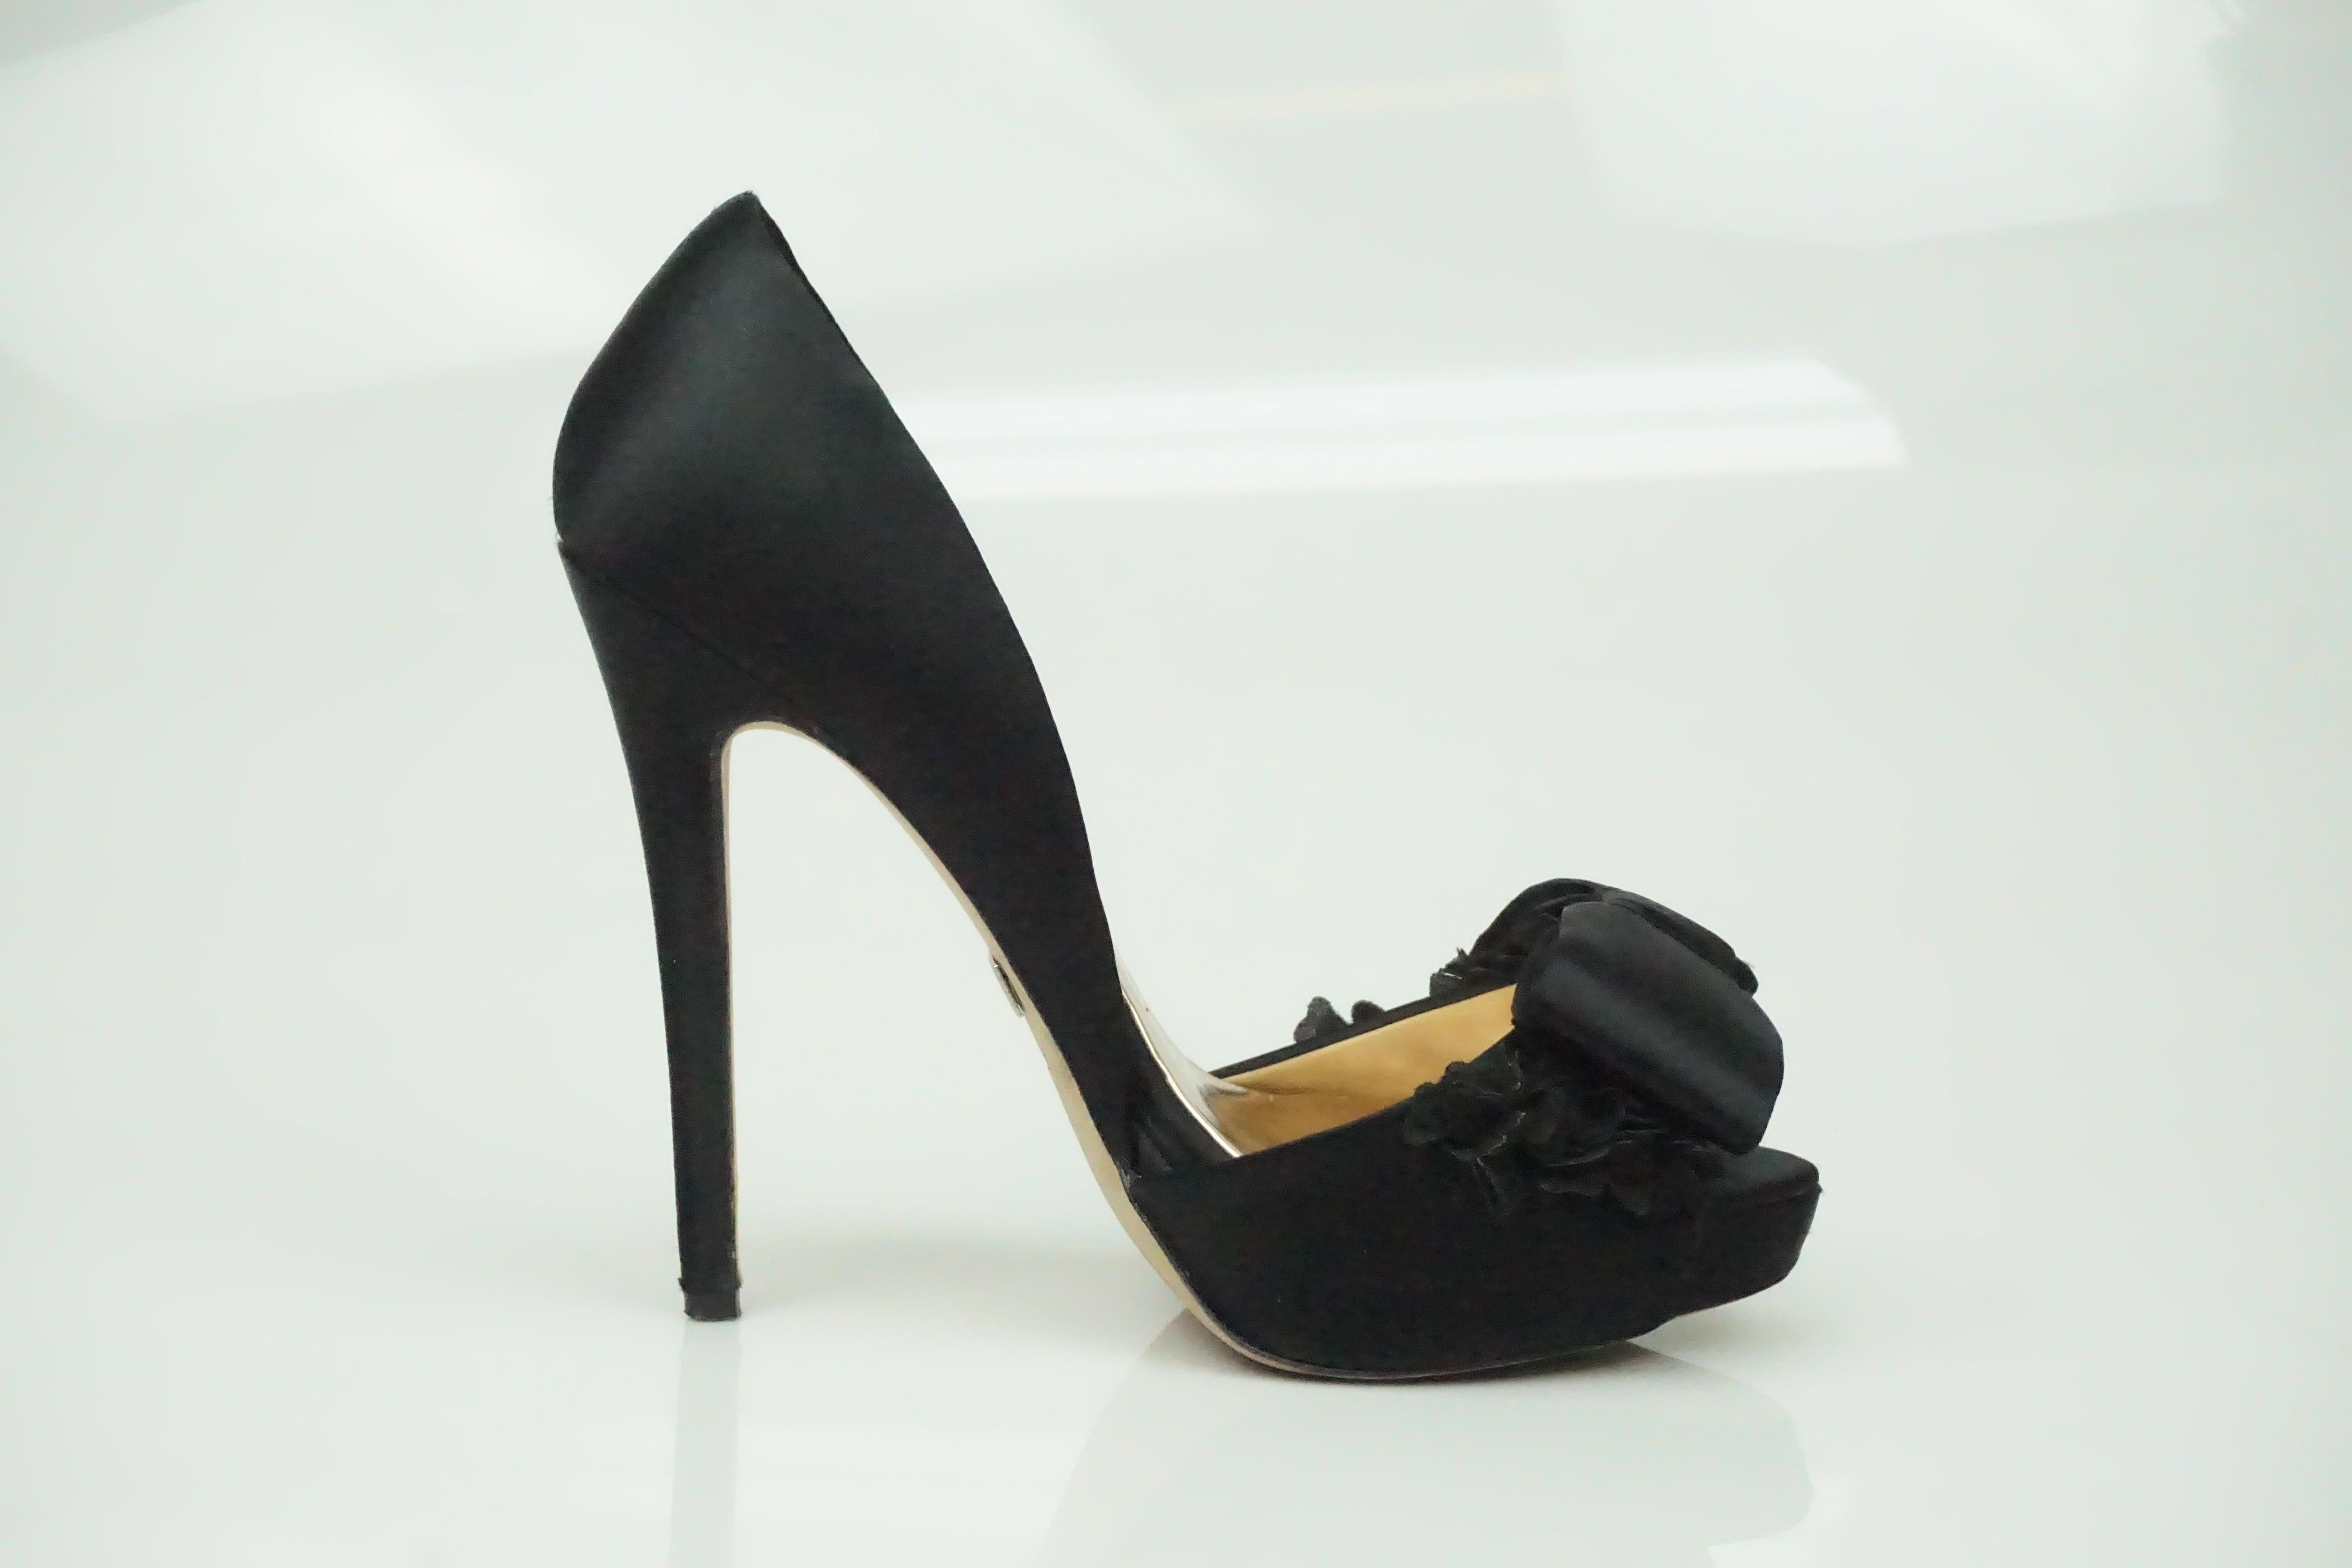 Badgley Mischka Schwarze Satin-Pump mit Blumen- und Schleifendetails   Diese schönen Schuhe sind in gutem Zustand. Sie haben eine metallisch anmutende Innenseite und eine Peep-Toe-Zehe. Die Oberseite des Schuhs hat eine schöne florale Details aus